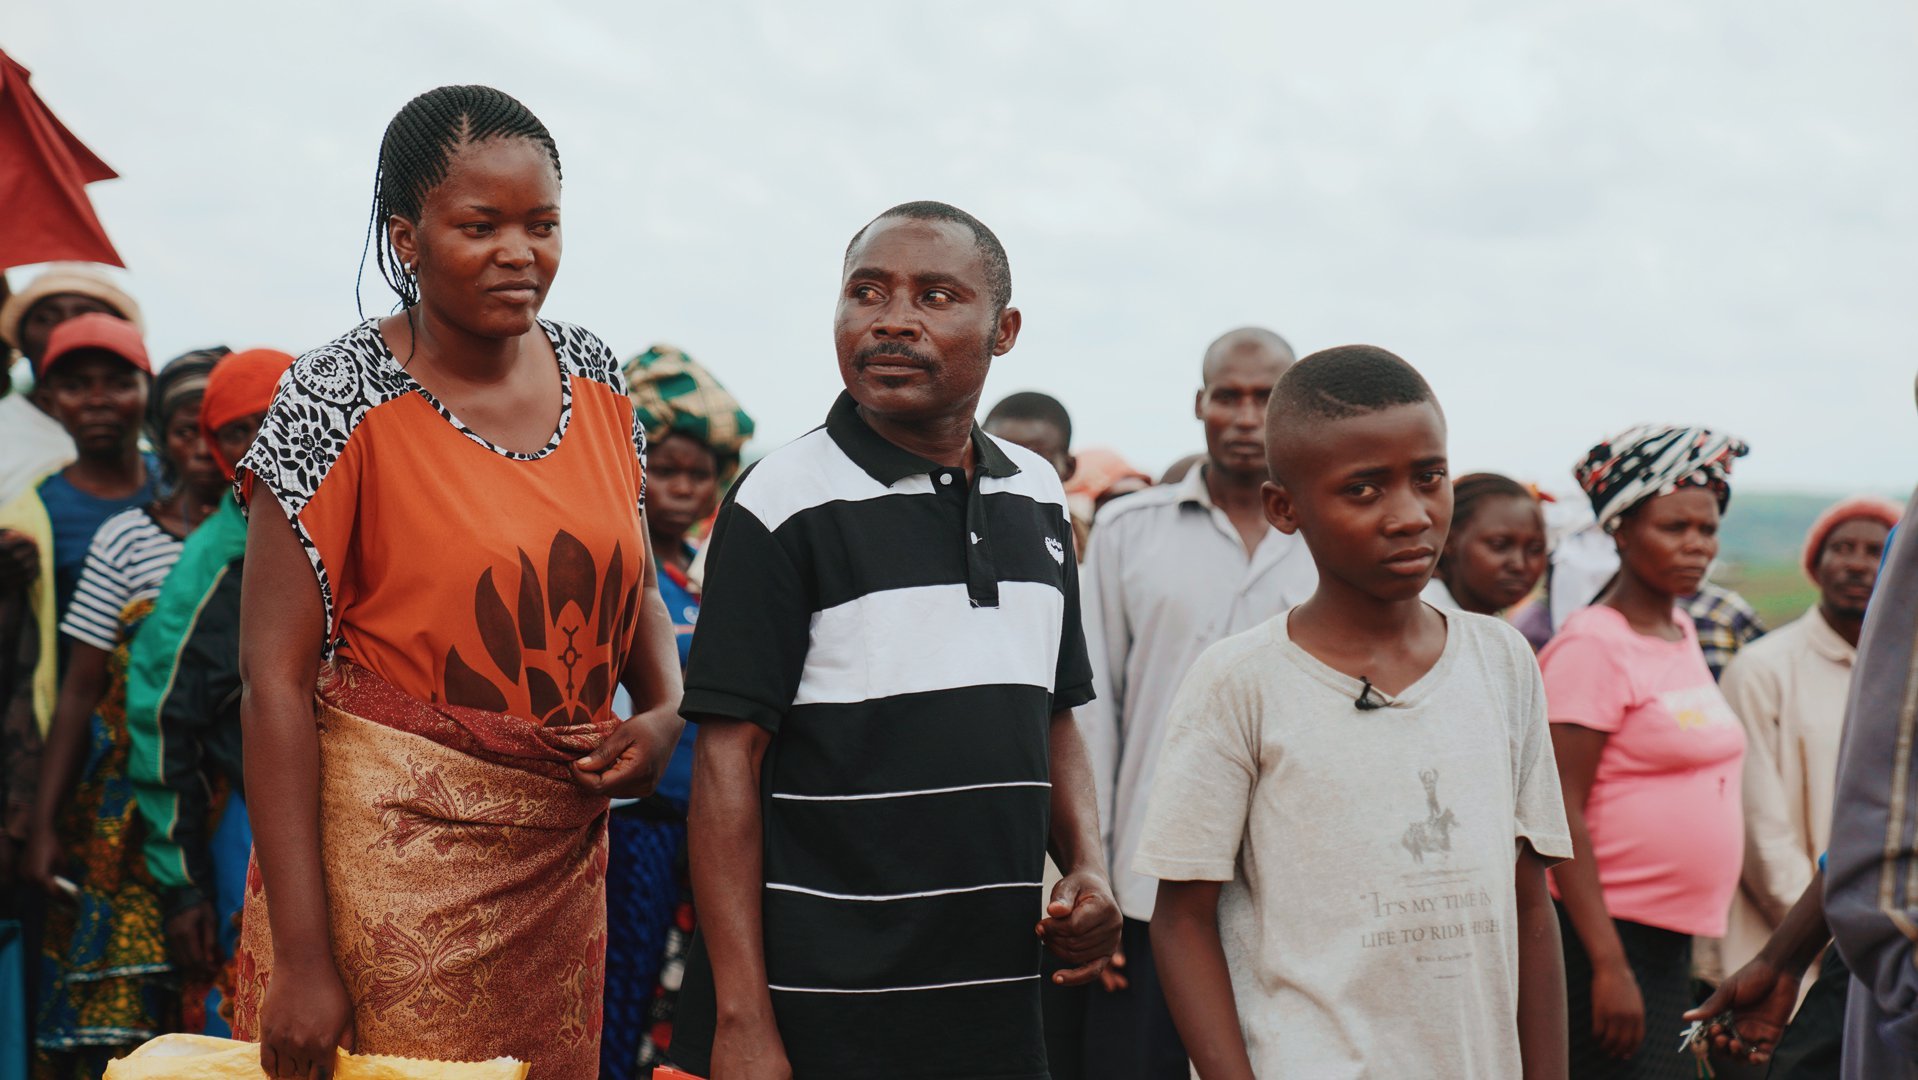 Nelson en zijn ouders in een vluchtelingenkamp in Oeganda - krijgen hulp van War Child